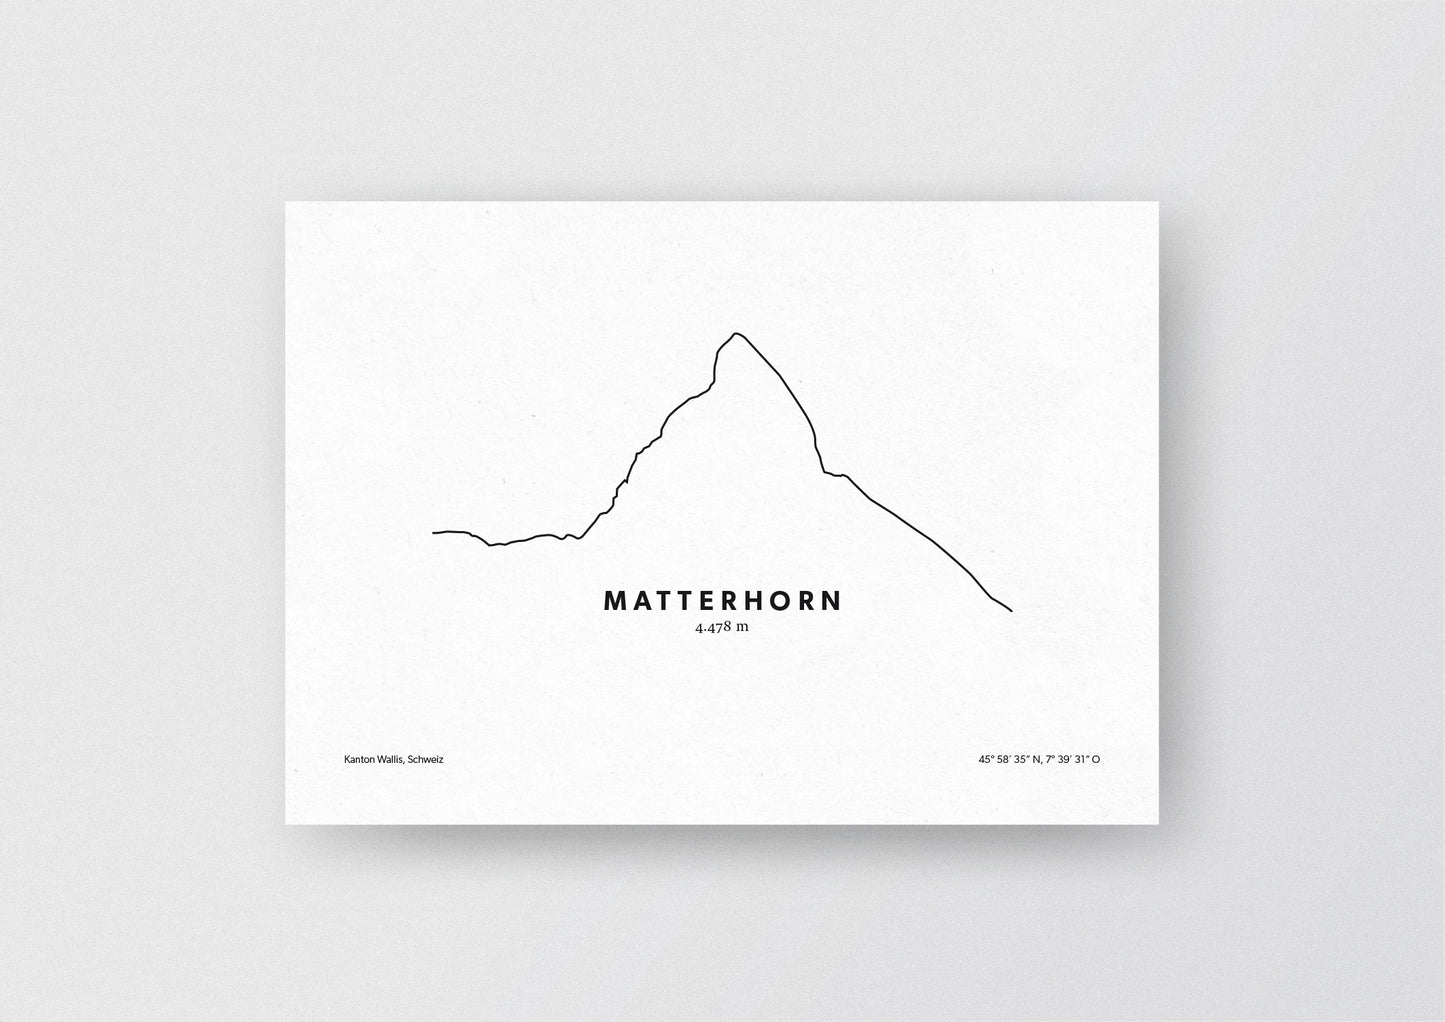 Minimalistische Illustration des Matterhon in der Schweiz, als stilvoller Einrichtungsgegenstand für Zuhause.